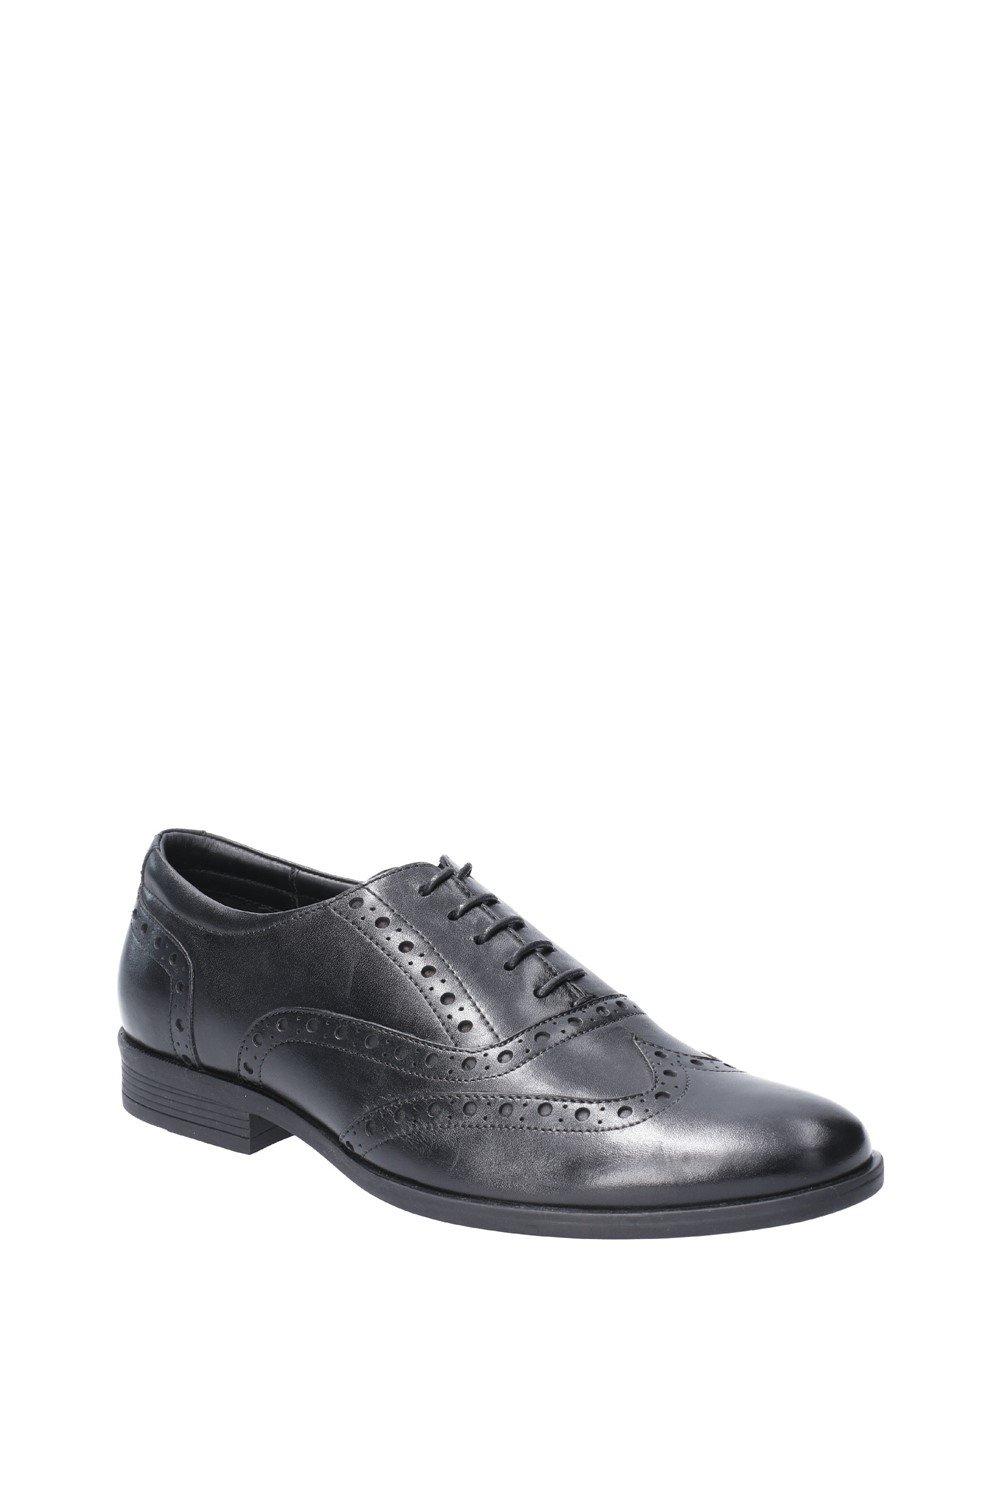 Кожаные туфли на шнуровке 'Oaken Brogue' Hush Puppies, черный мужские классические туфли из натуральной кожи оксфорды свадебные туфли круглый носок на шнуровке для бизнеса работы черные белые